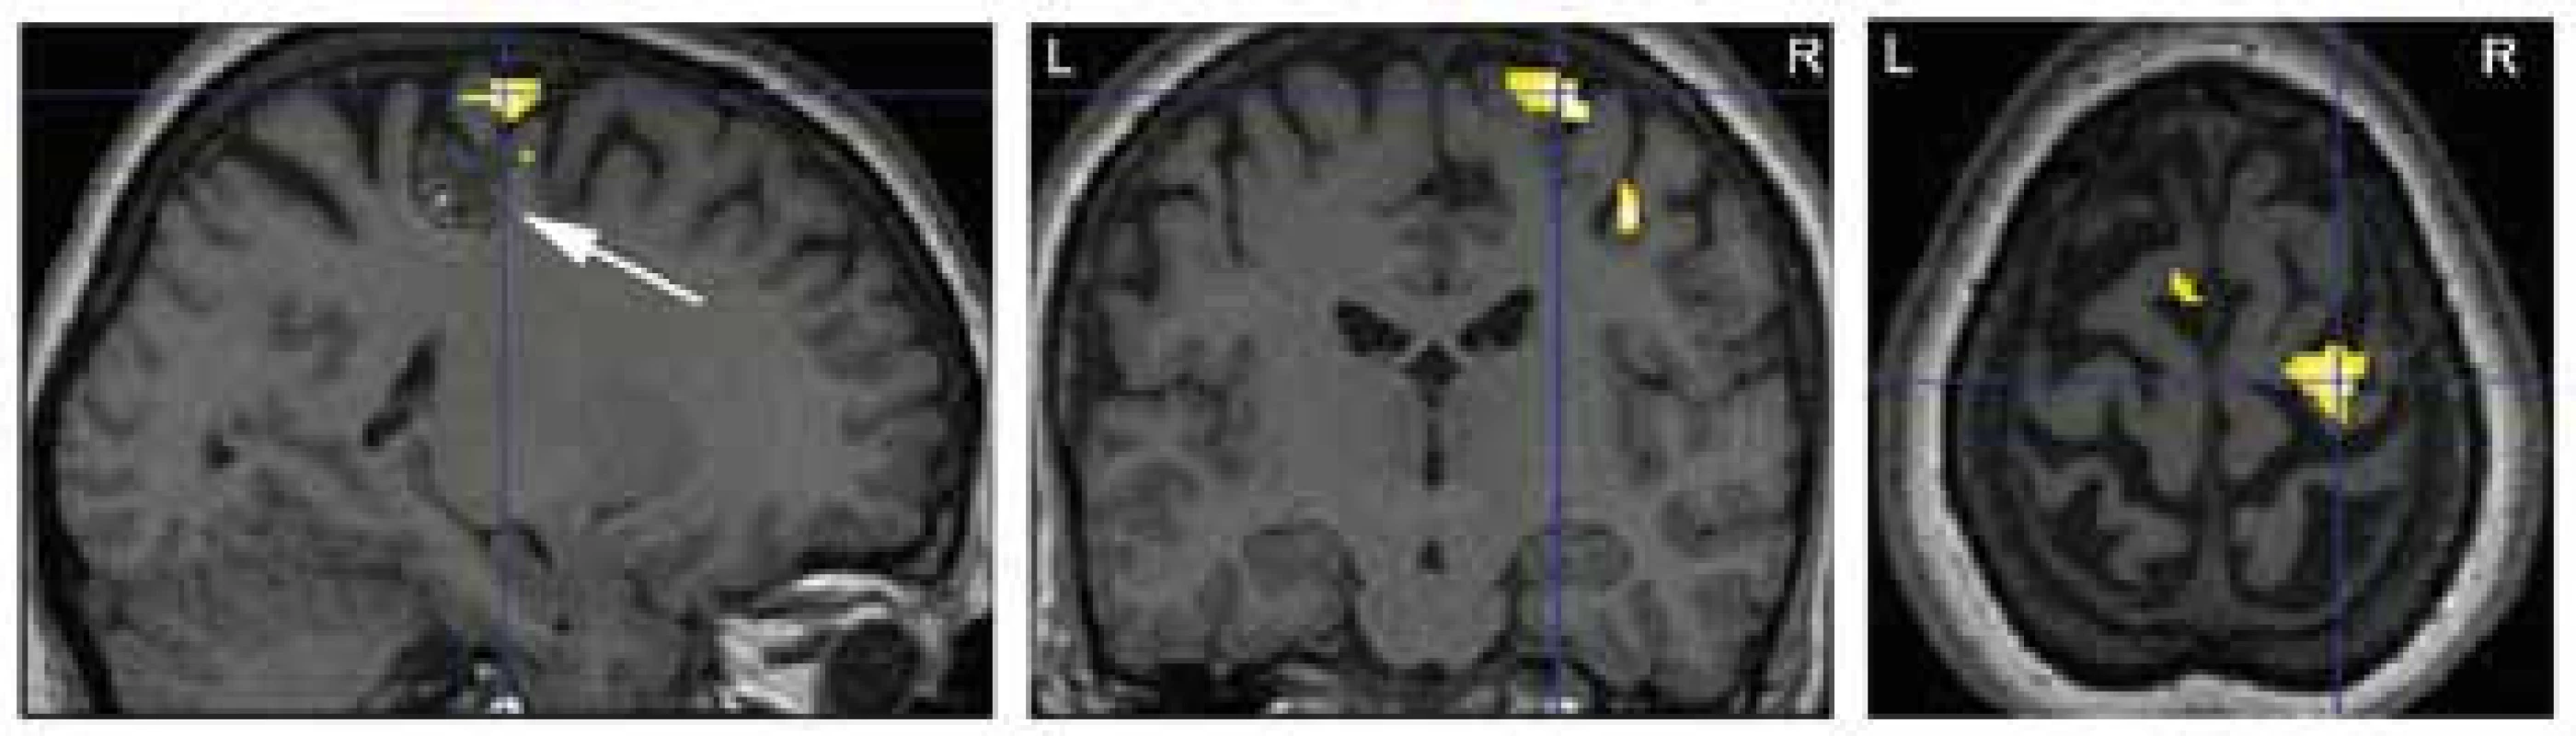 Výsledek fMR vyšetření k objasnění anatomického vztahu mezi primárním motorickým kortexem pro levou ruku (žlutá barva; p &lt; 0,05 FWE corr.) a strukturální lézí (kavernomem) na dně sulcus centralis vpravo – označena šipkou (pacient 5).